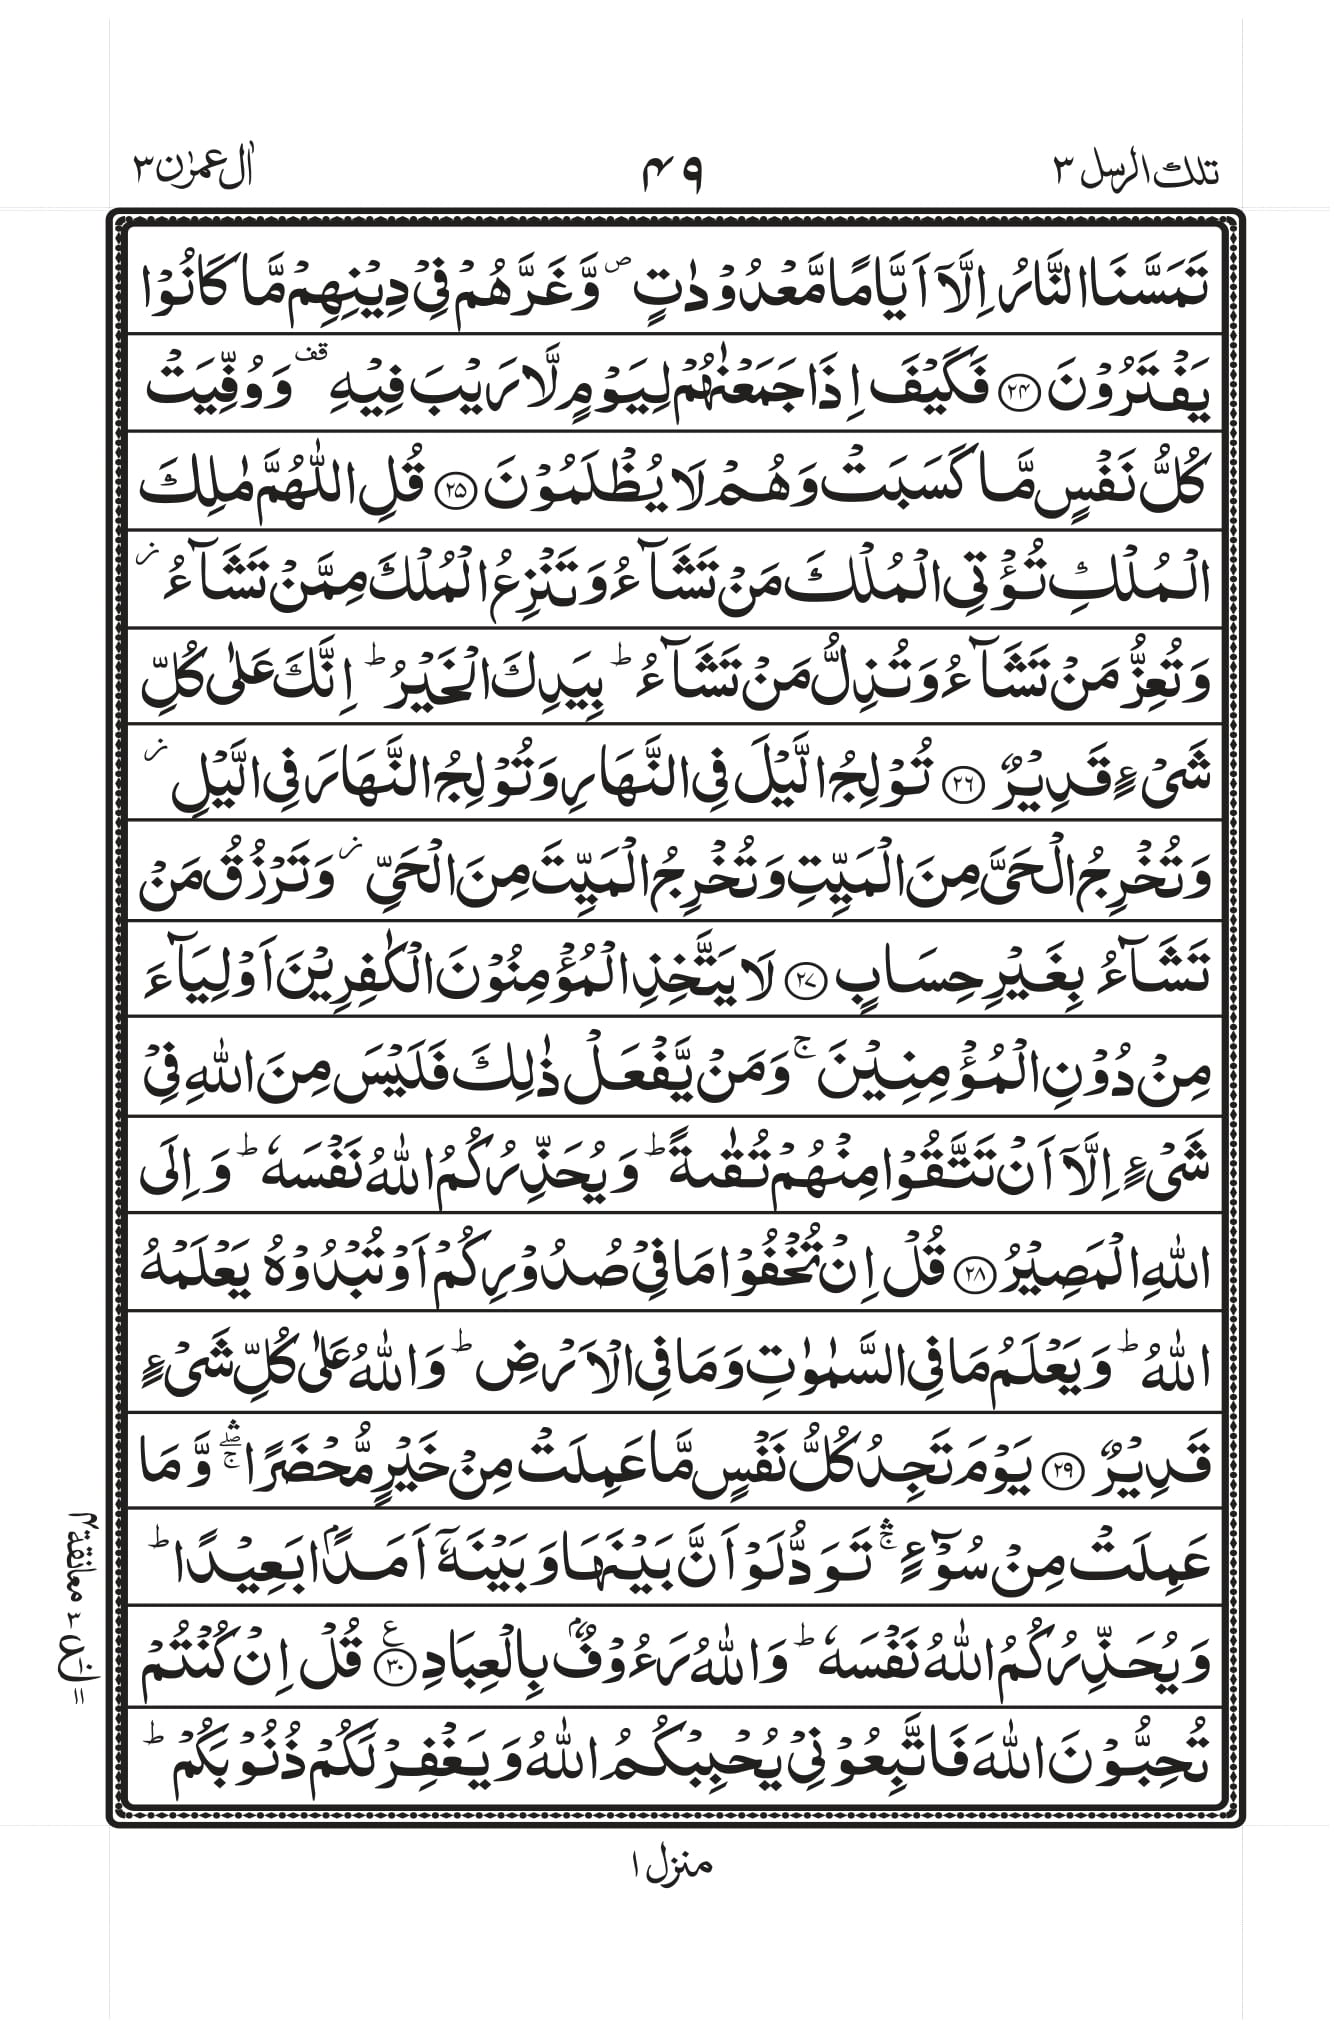 Surah Al Imran Aytal Kursi PDF - Download Aytal Kursi Translation PDF